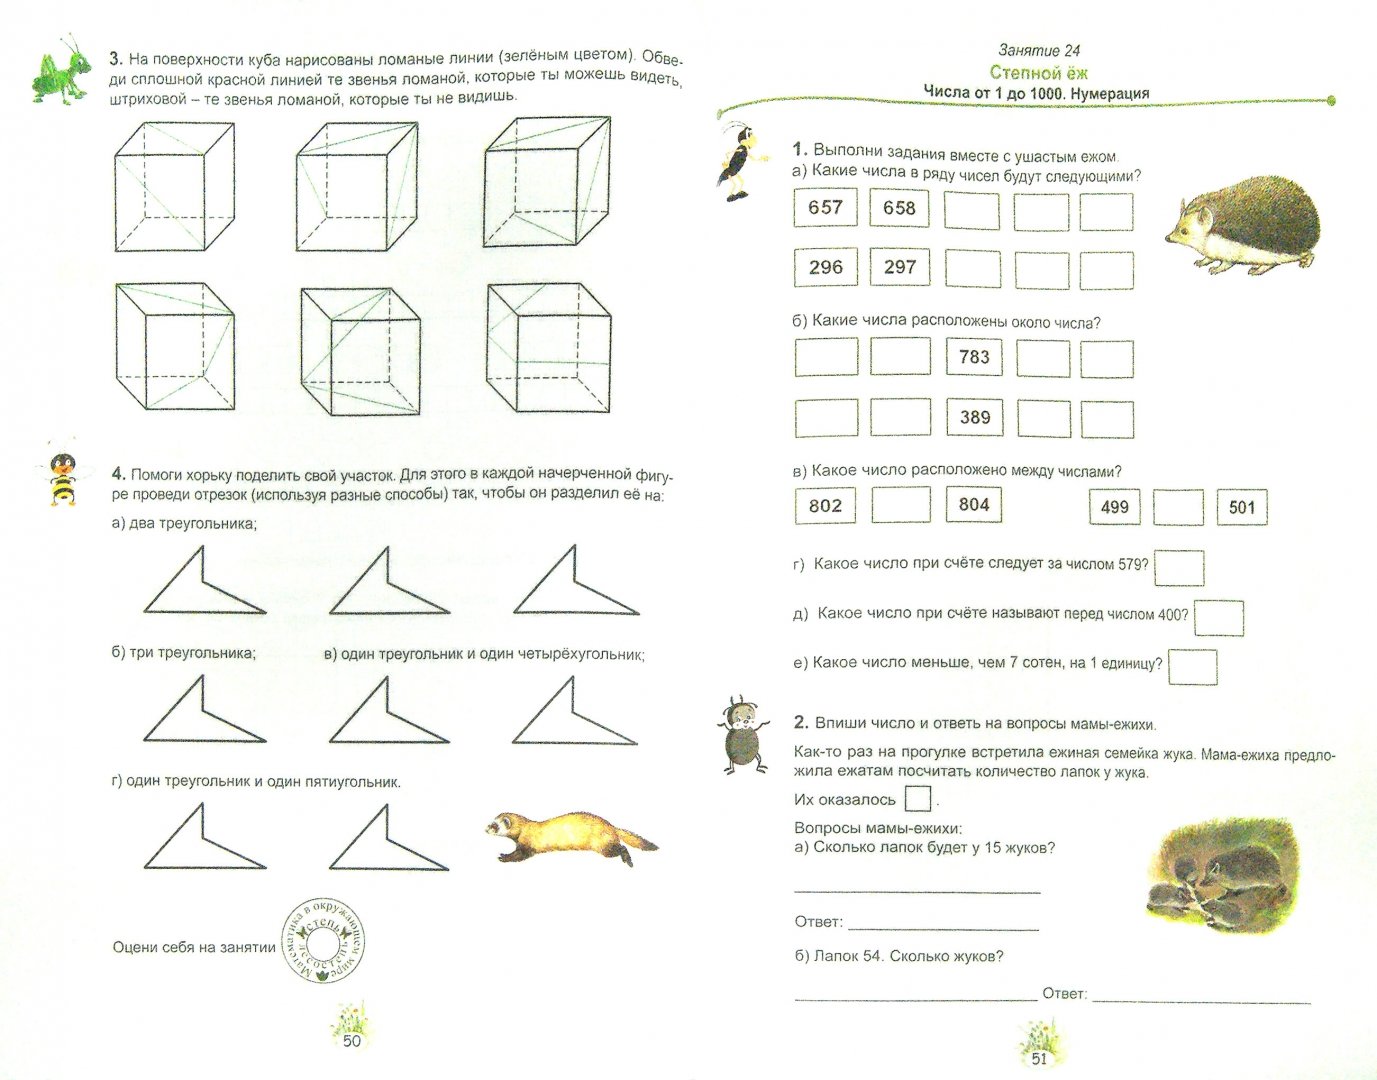 Иллюстрация 1 из 24 для Математика с увлечением. 3 класс. Развивающие задания для школьников - Буряк, Карышева | Лабиринт - книги. Источник: Лабиринт